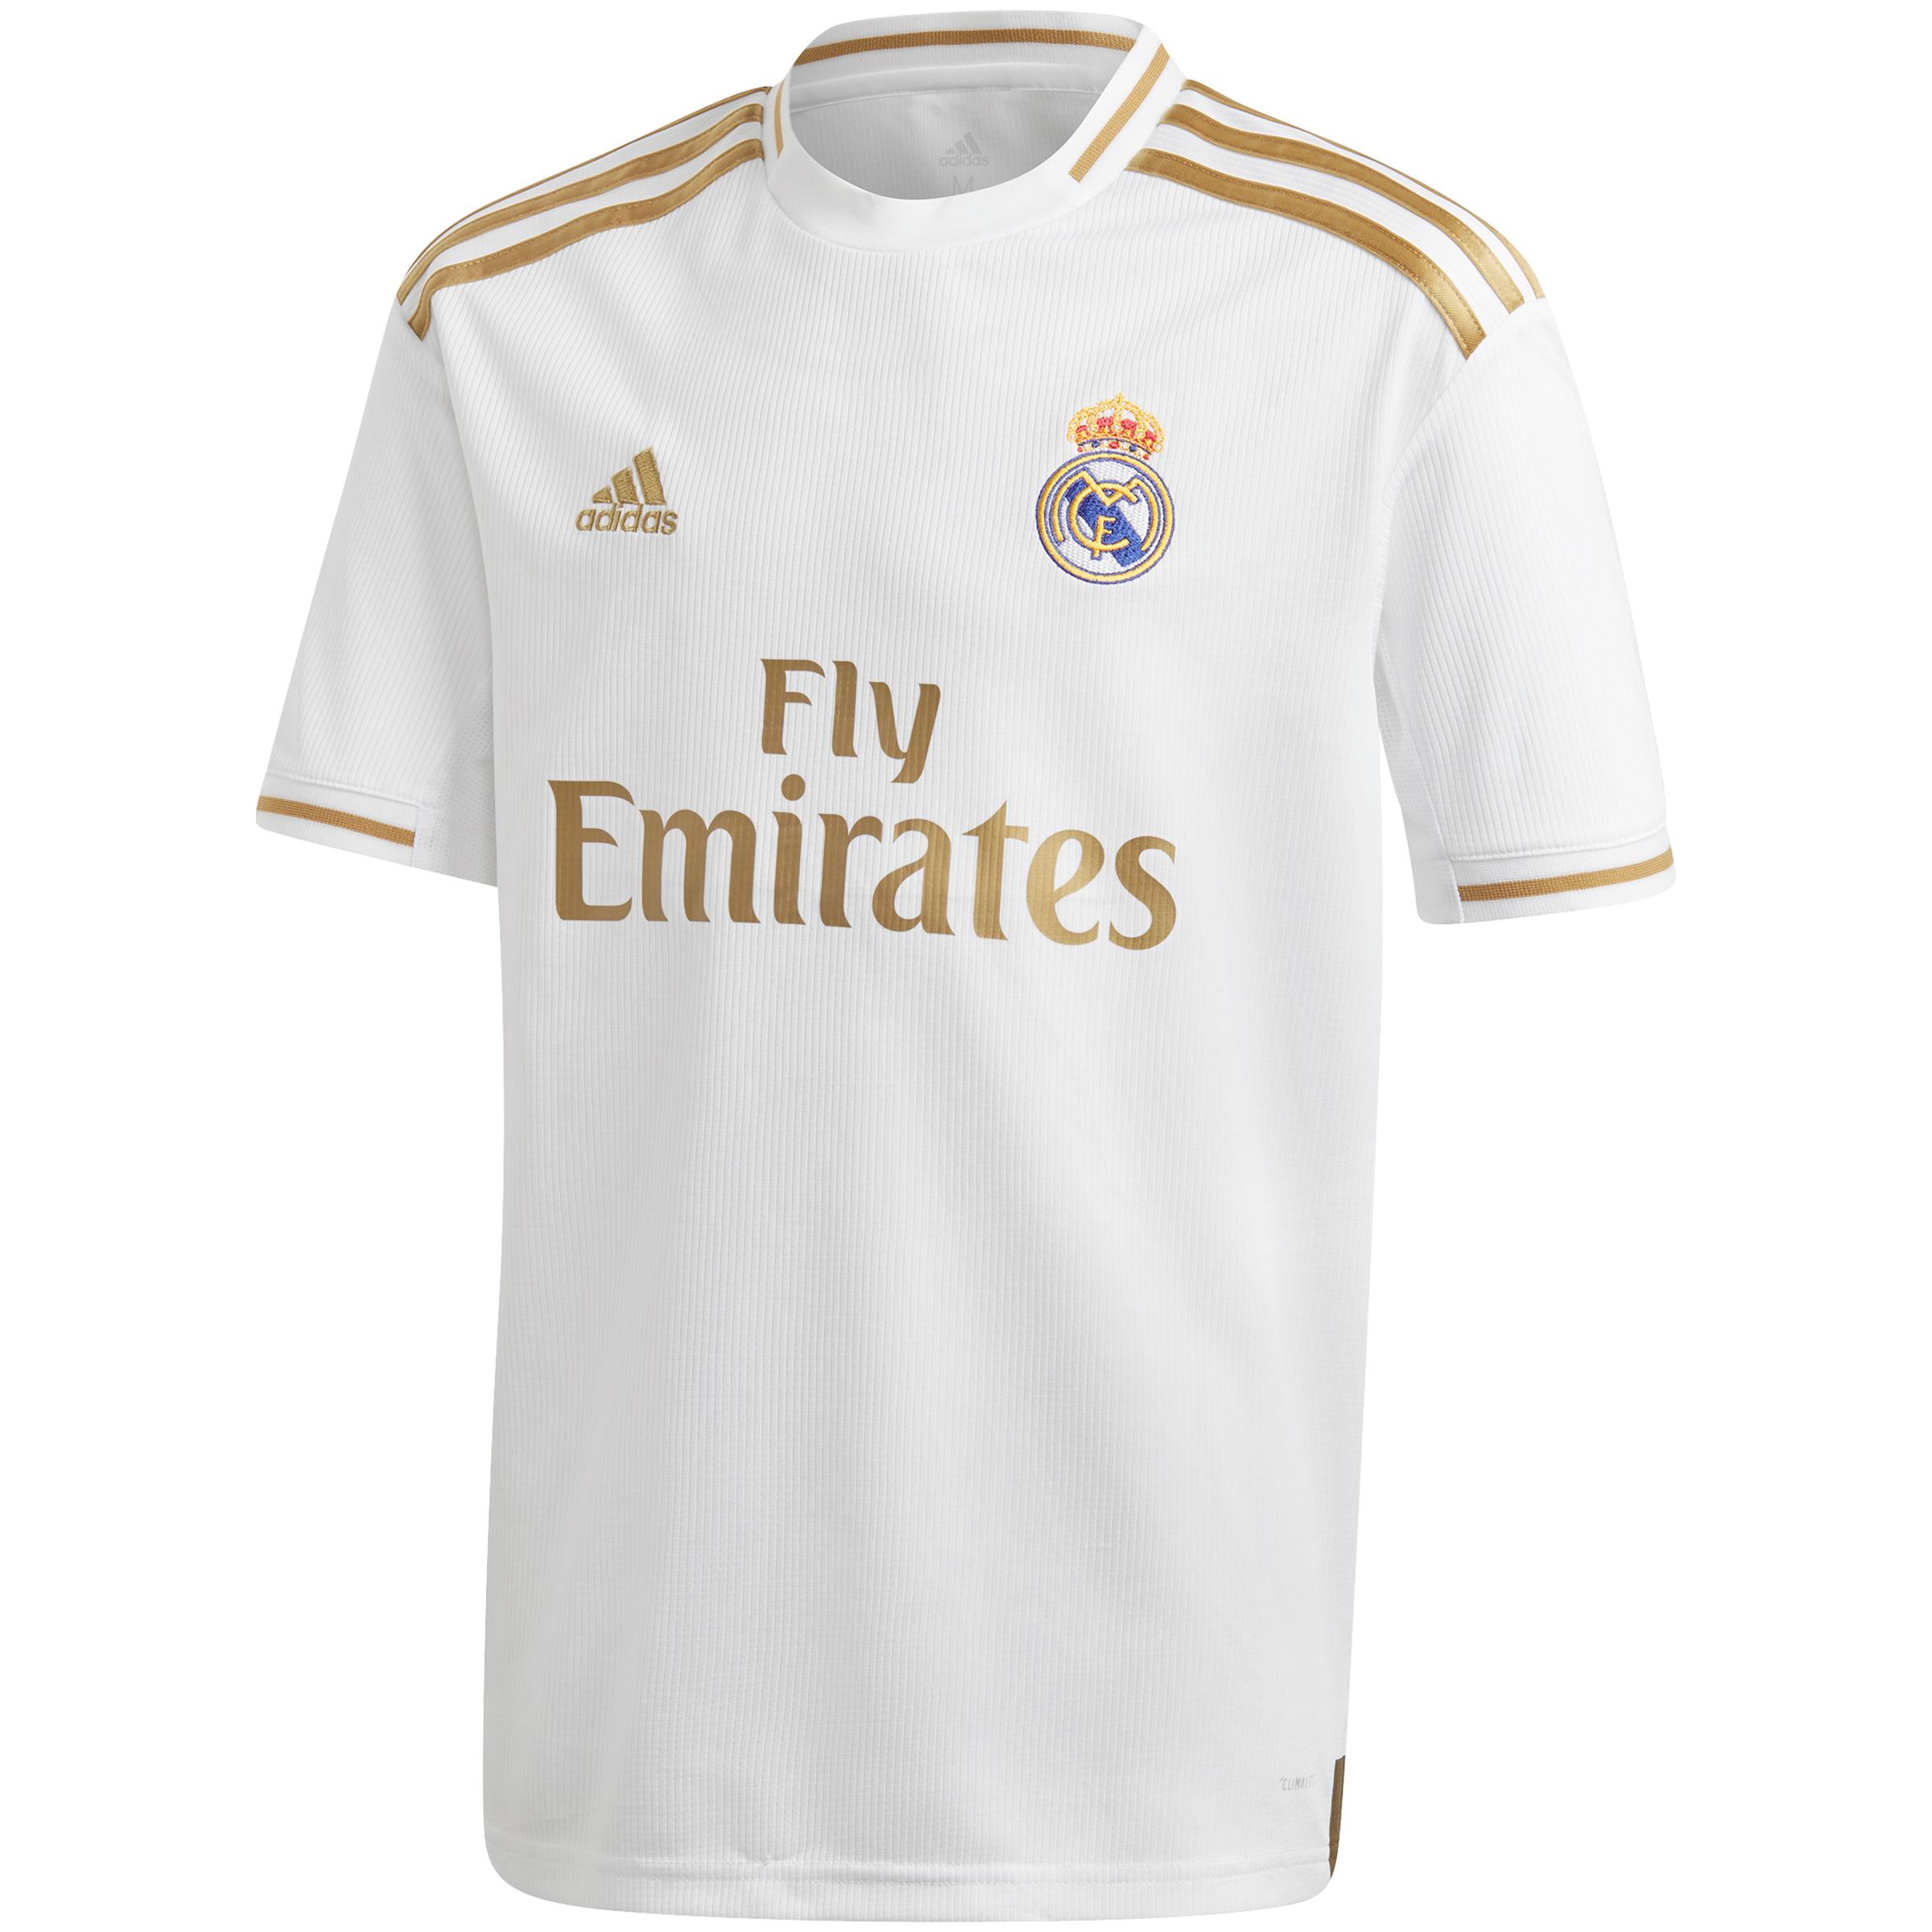 Real madrid купить футболку. Футболка adidas real Madrid. Футболка Реал Мадрид 2018. Форма Реал Мадрид 18/19. Футболку Реал Мадрид 2017-18.